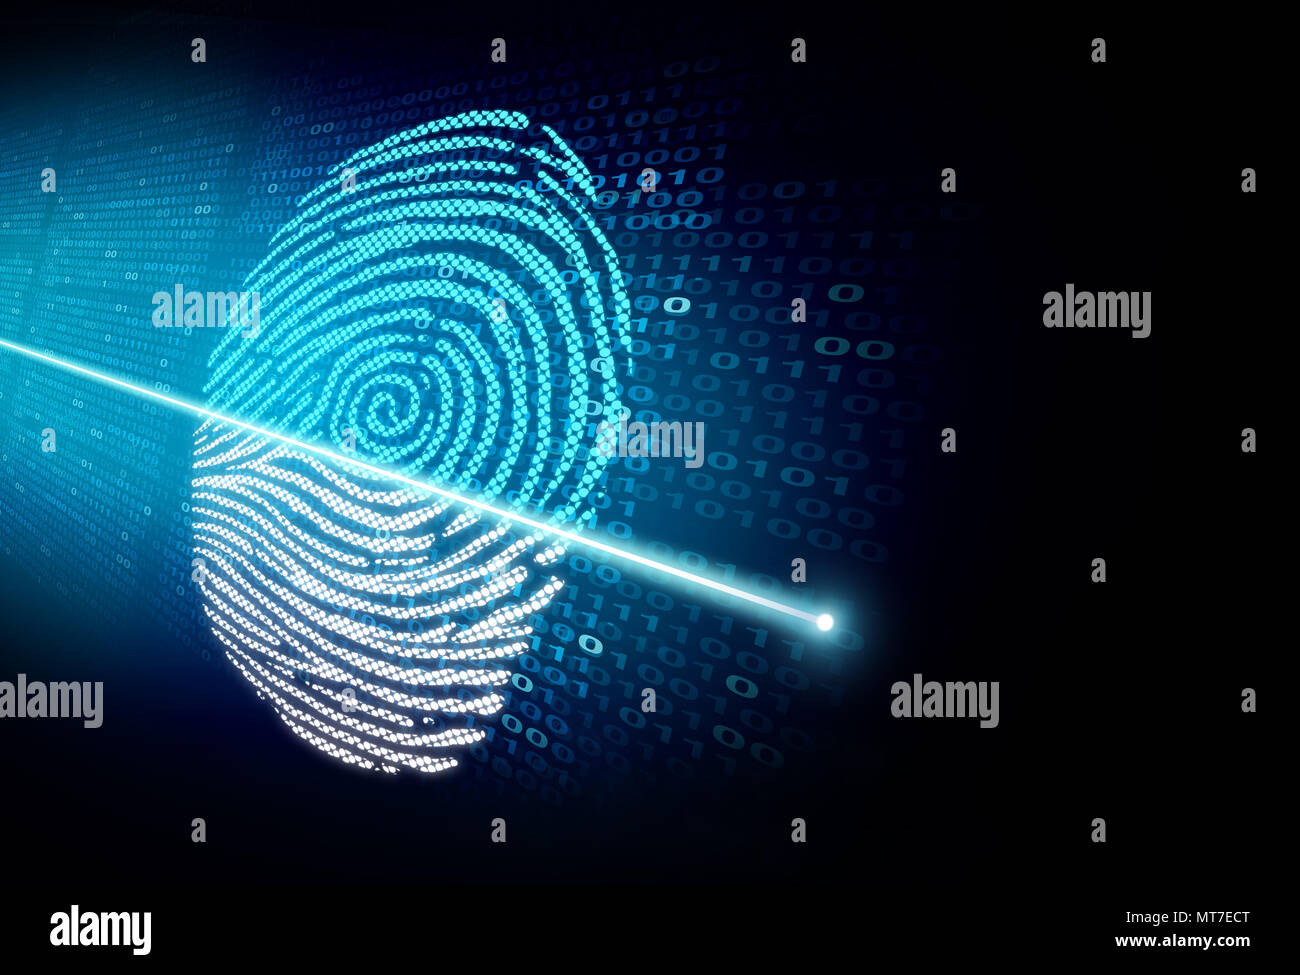 Scansione di sicurezza e autenticazione di sicurezza informatica come un riconoscimento con biometria e tecnologia di accesso in un concetto 3D illustrazione dello stile. Foto Stock